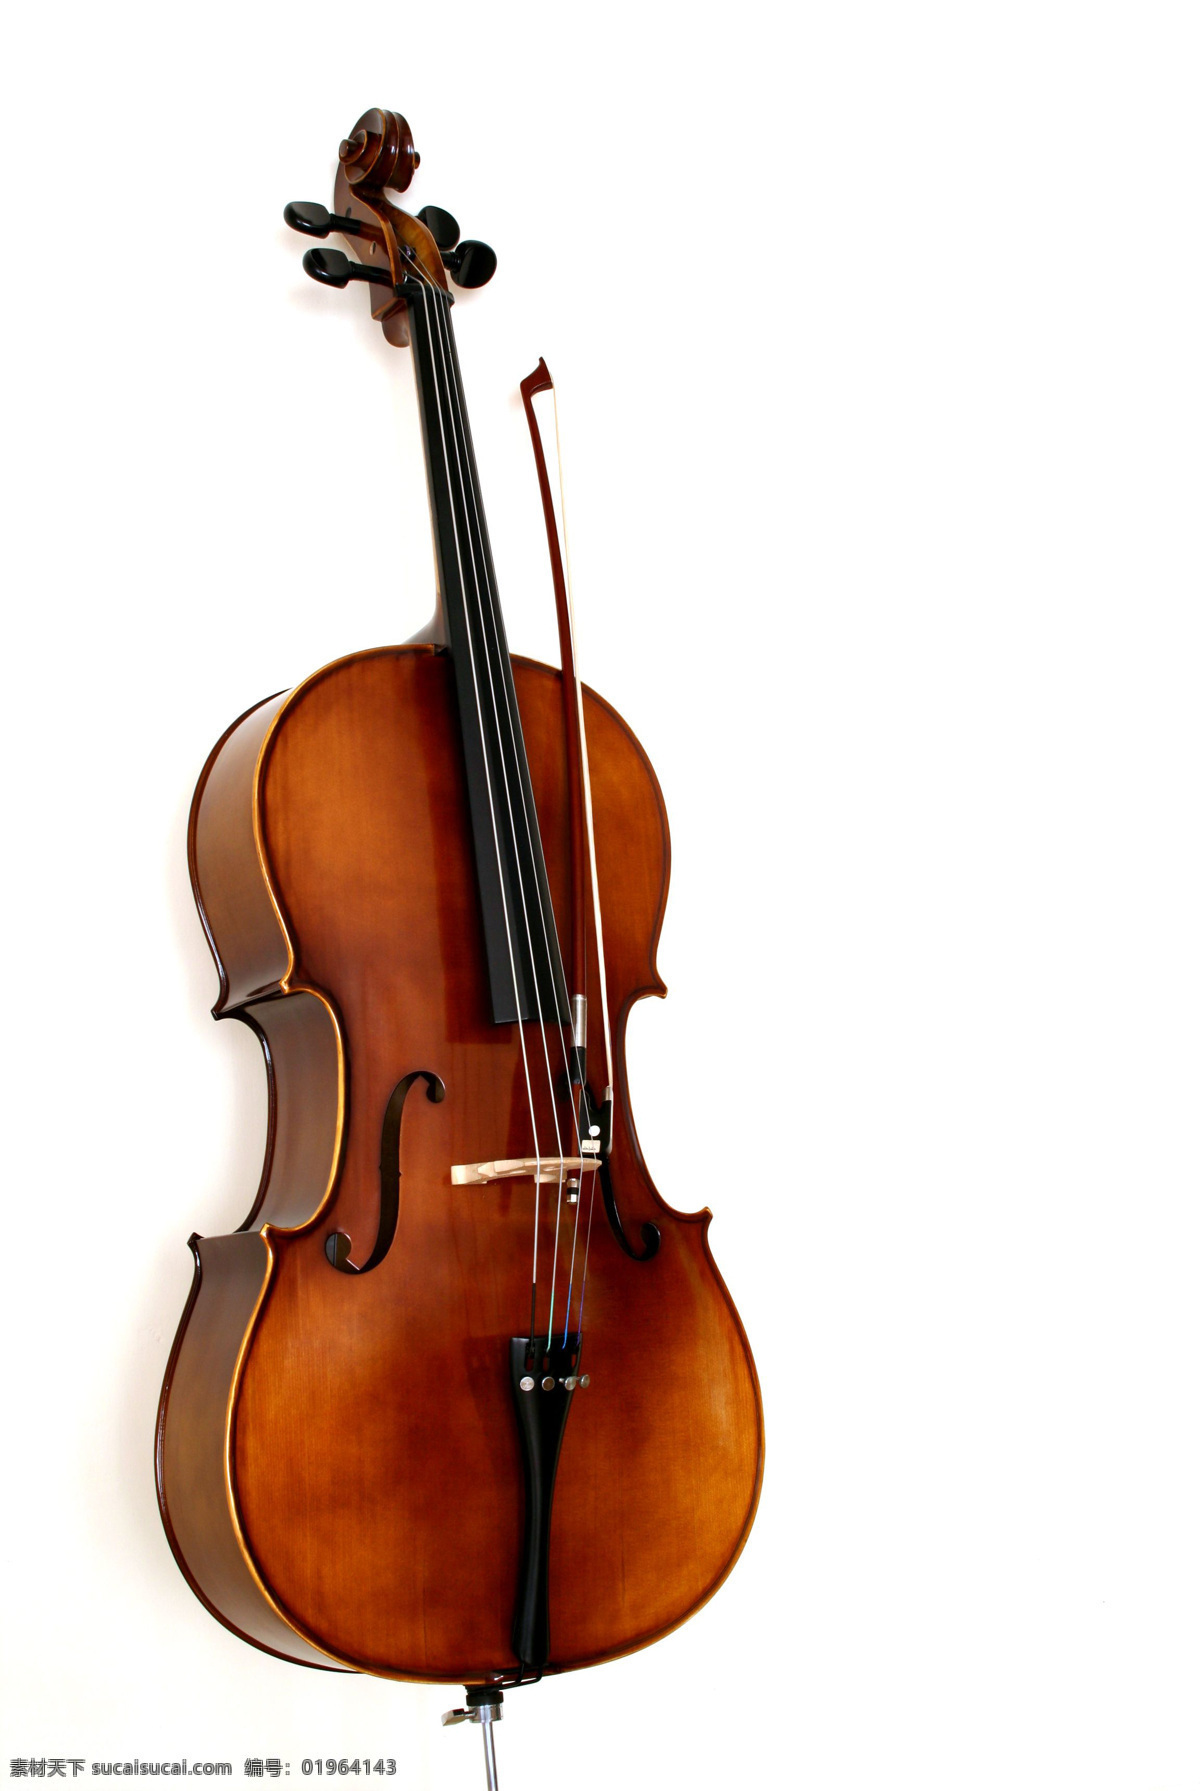 大提琴 音樂器材 文化艺术 舞蹈音乐 摄影图库